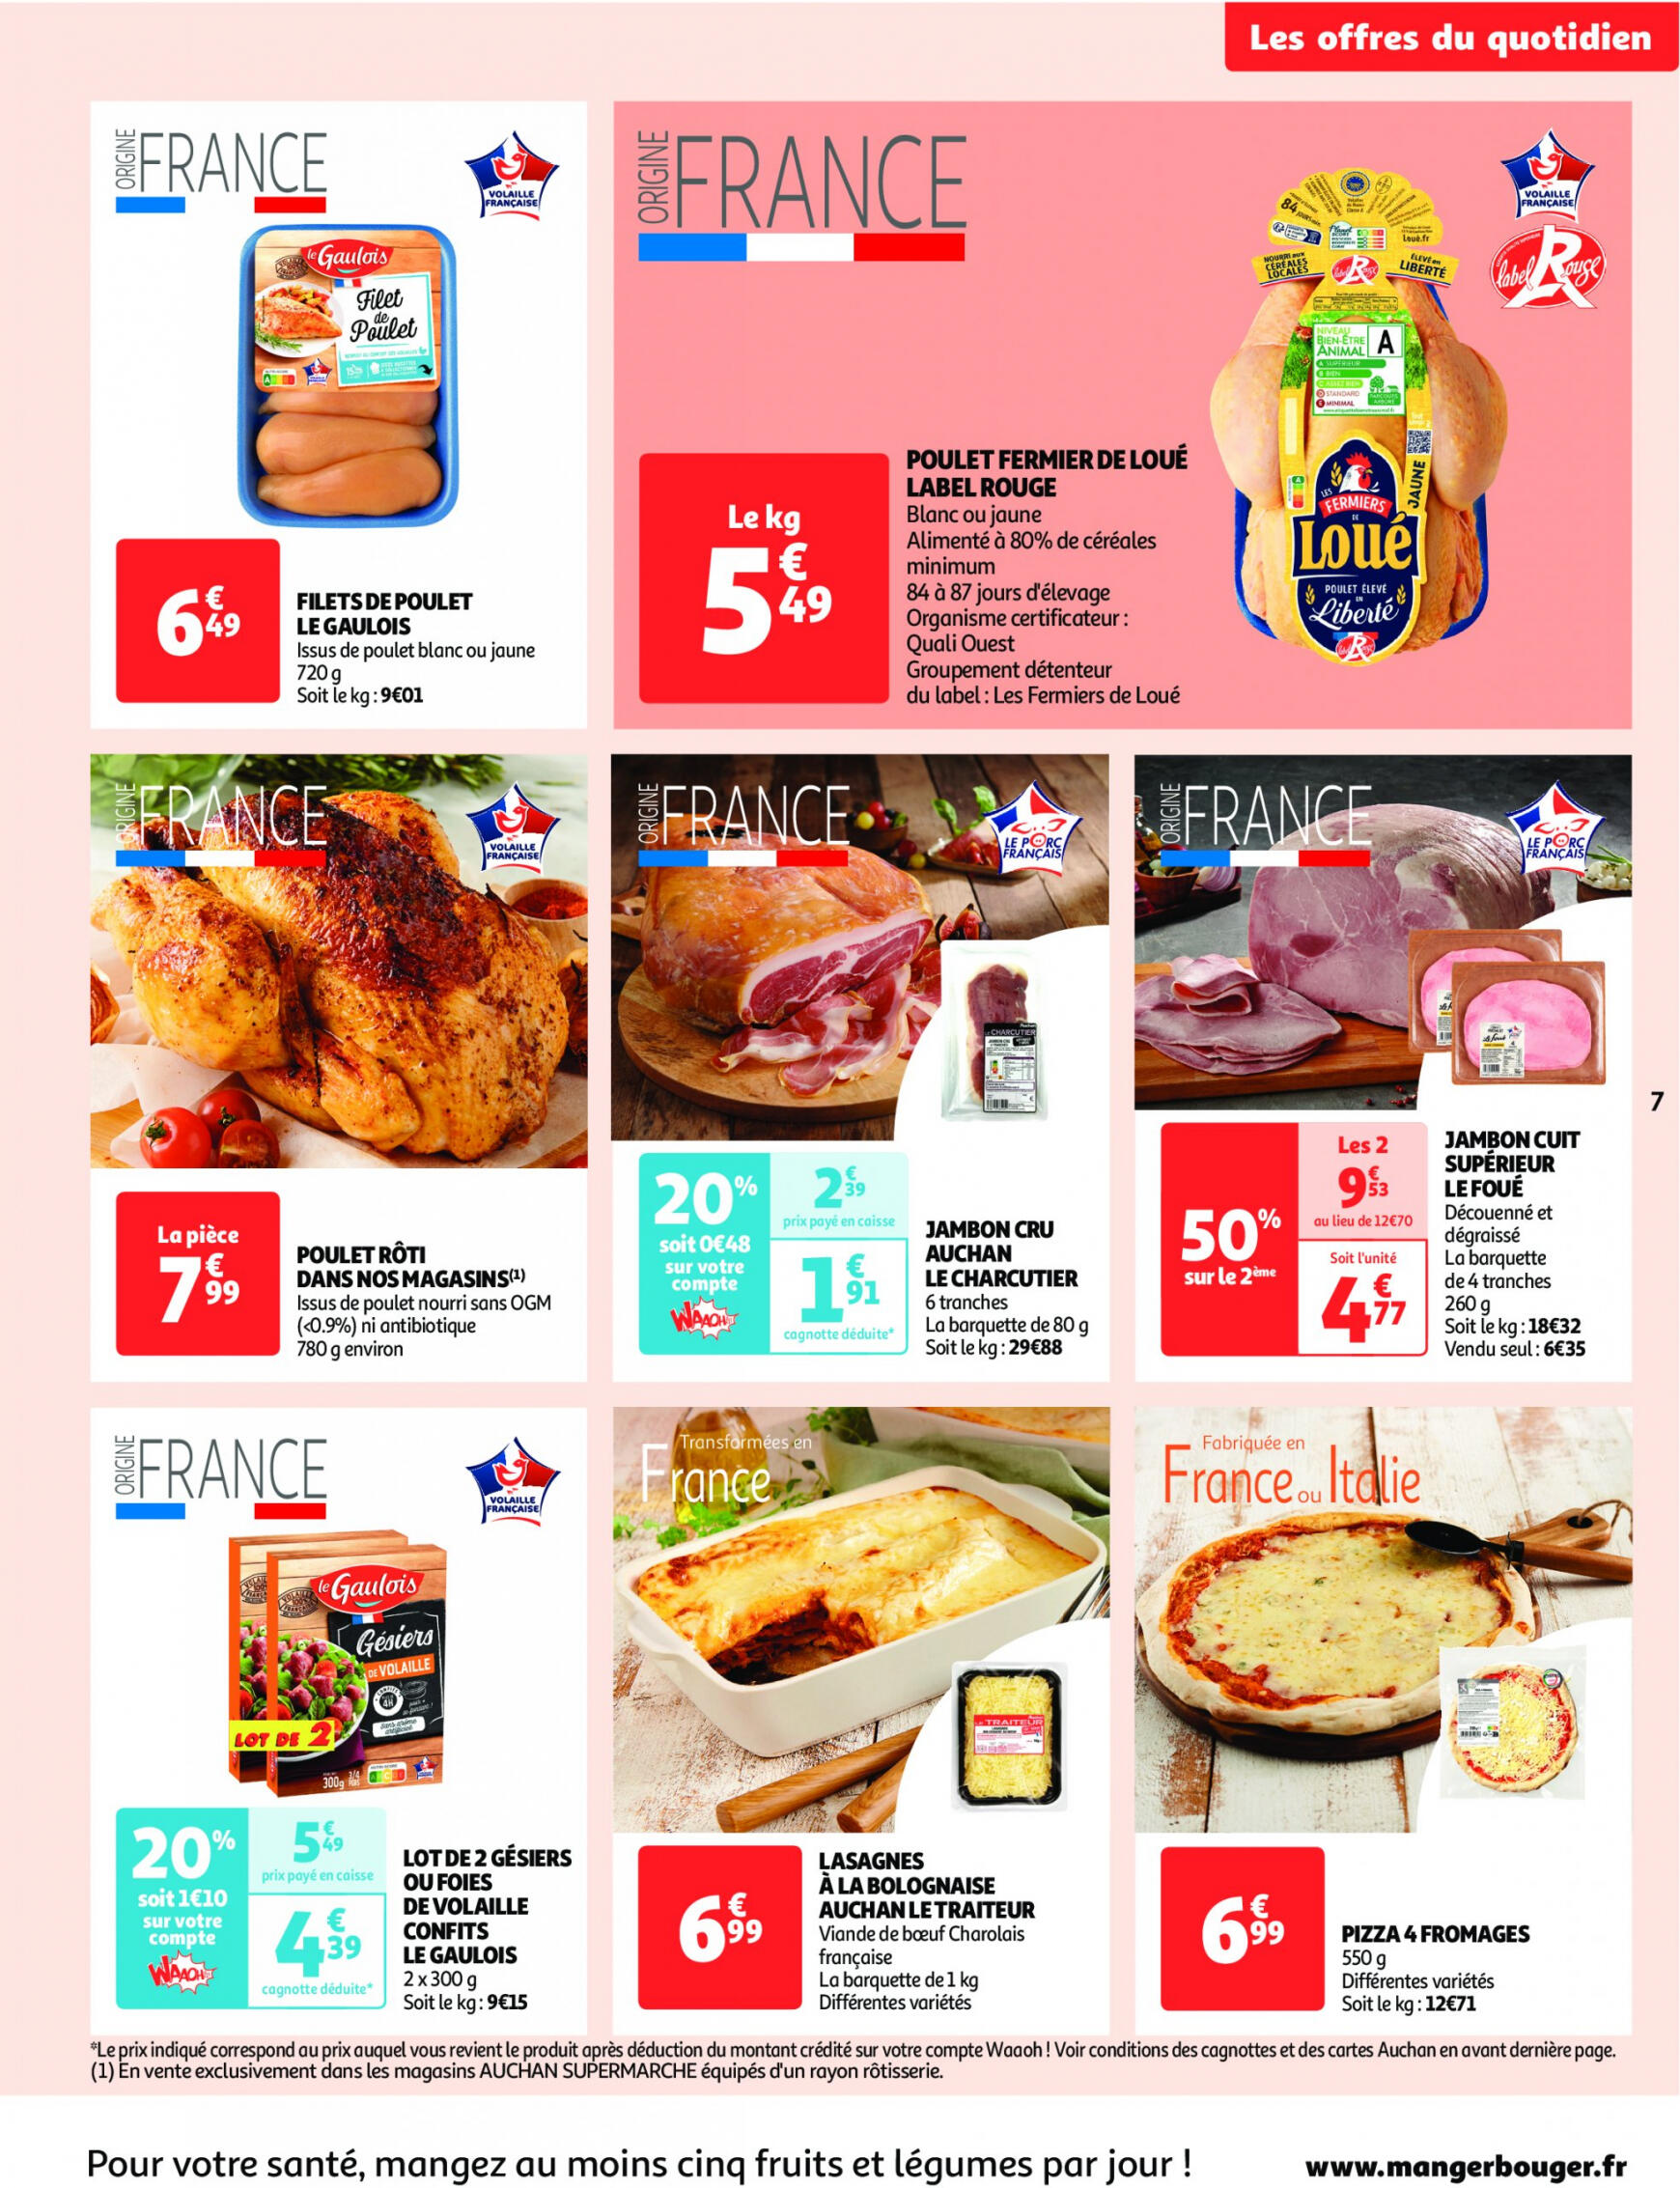 auchan - Auchan - On met le turbot sur les produits de la mer folder huidig 14.05. - 19.05. - page: 7